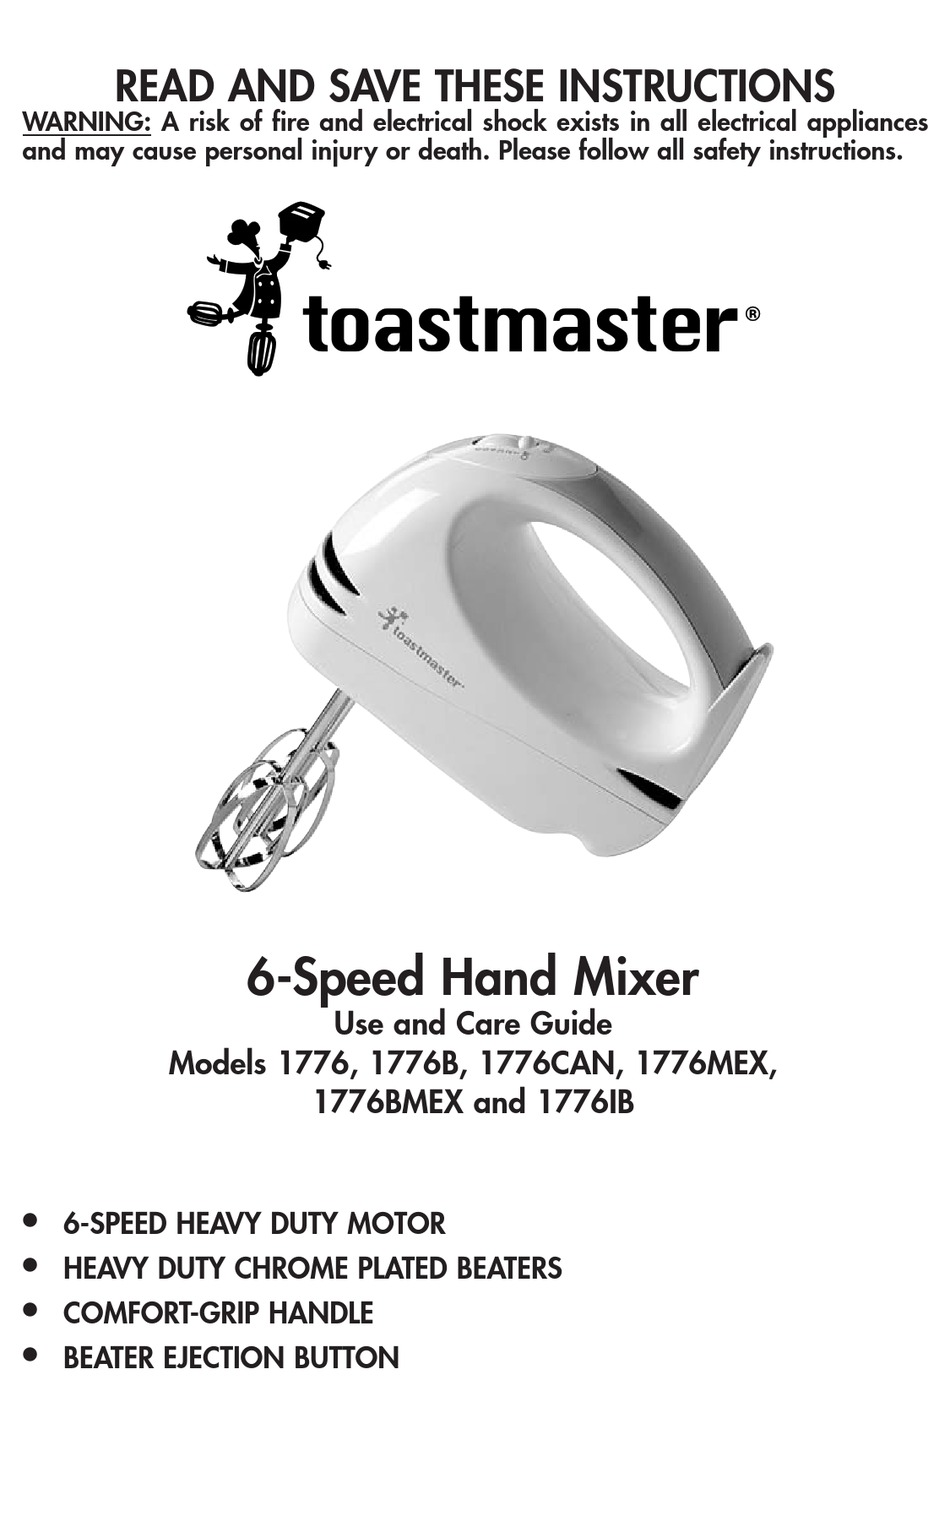 https://data2.manualslib.com/first-image/i4/18/1713/171279/toastmaster-1776b.jpg